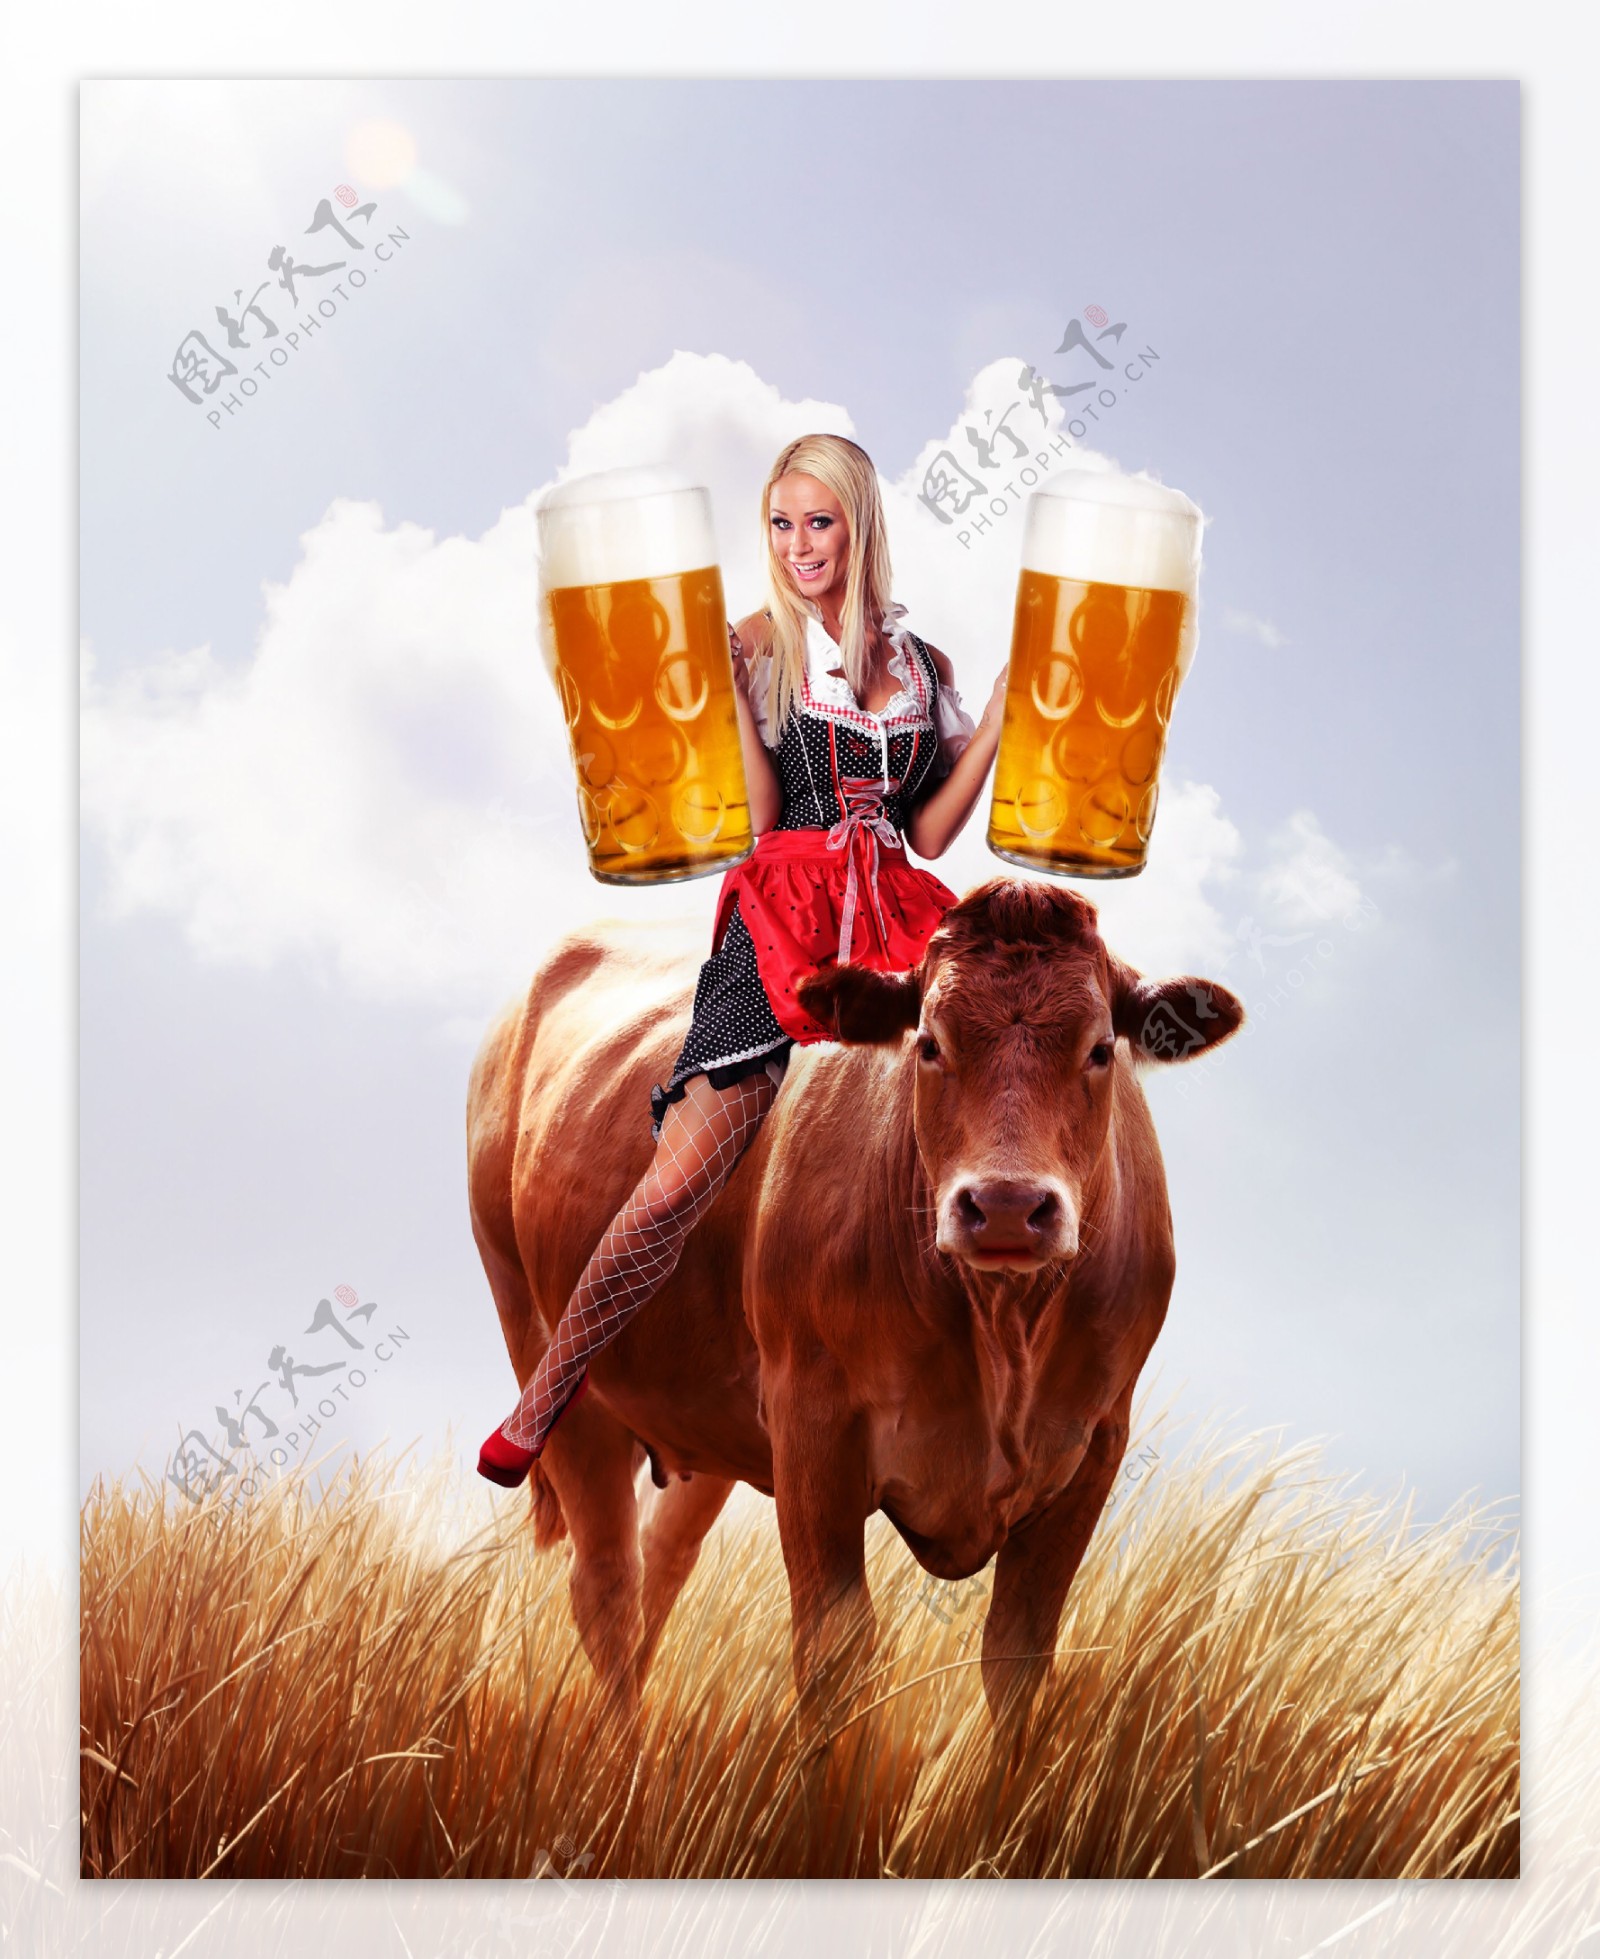 一个女人在酒吧喝酒图片高清原图下载,一个女人在酒吧喝酒图片,壁纸图片,女孩-桌面城市